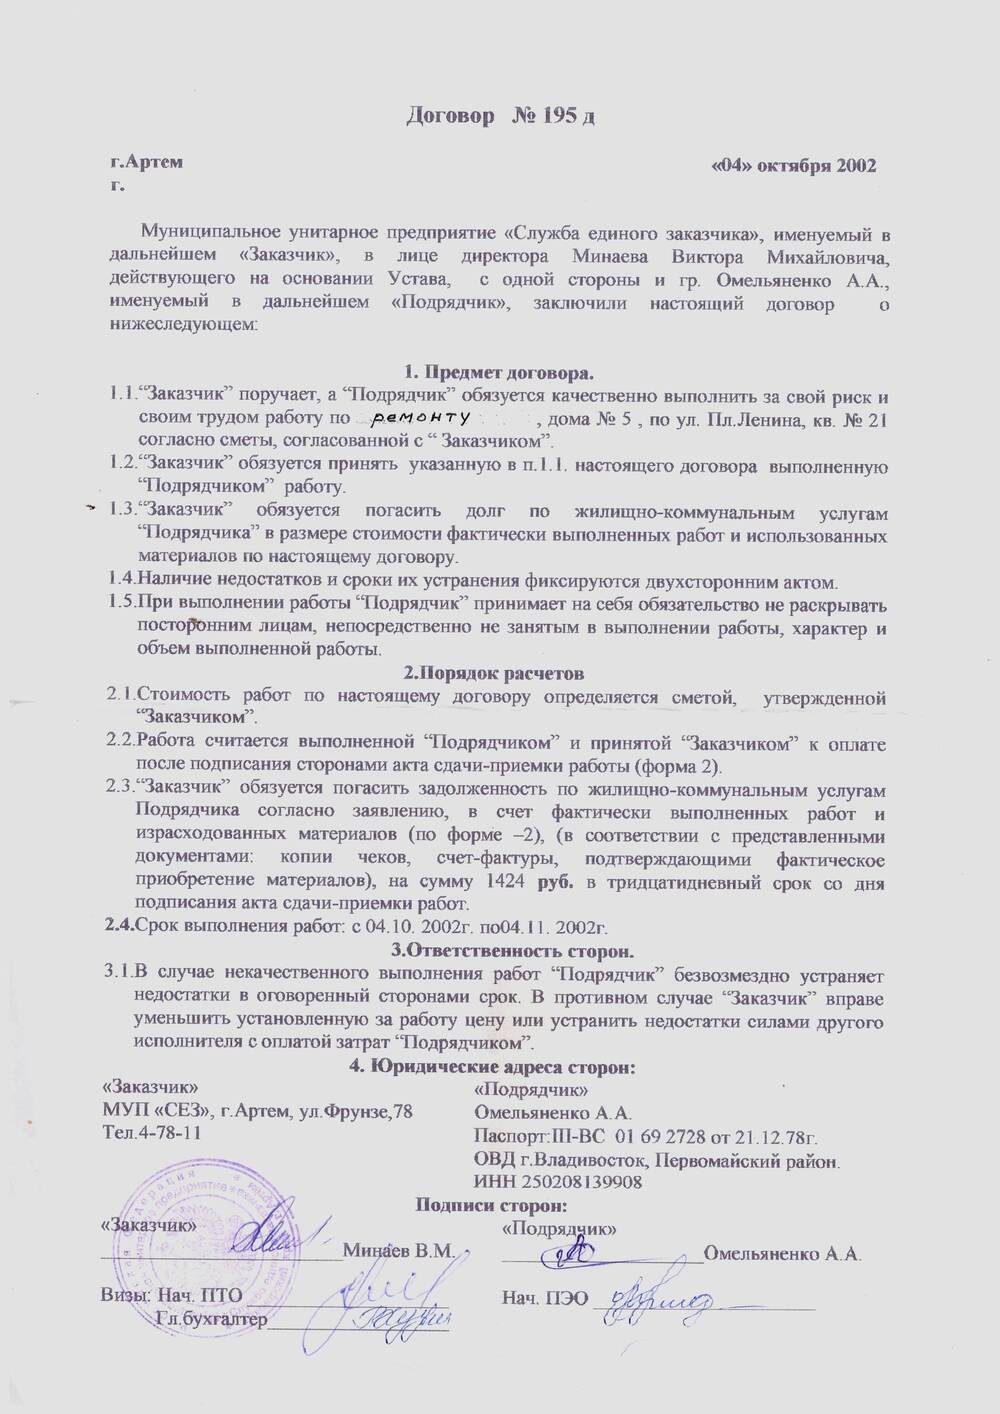 Договор на ремонт дома со «Службой единого заказчика» Омельяненко А.А.